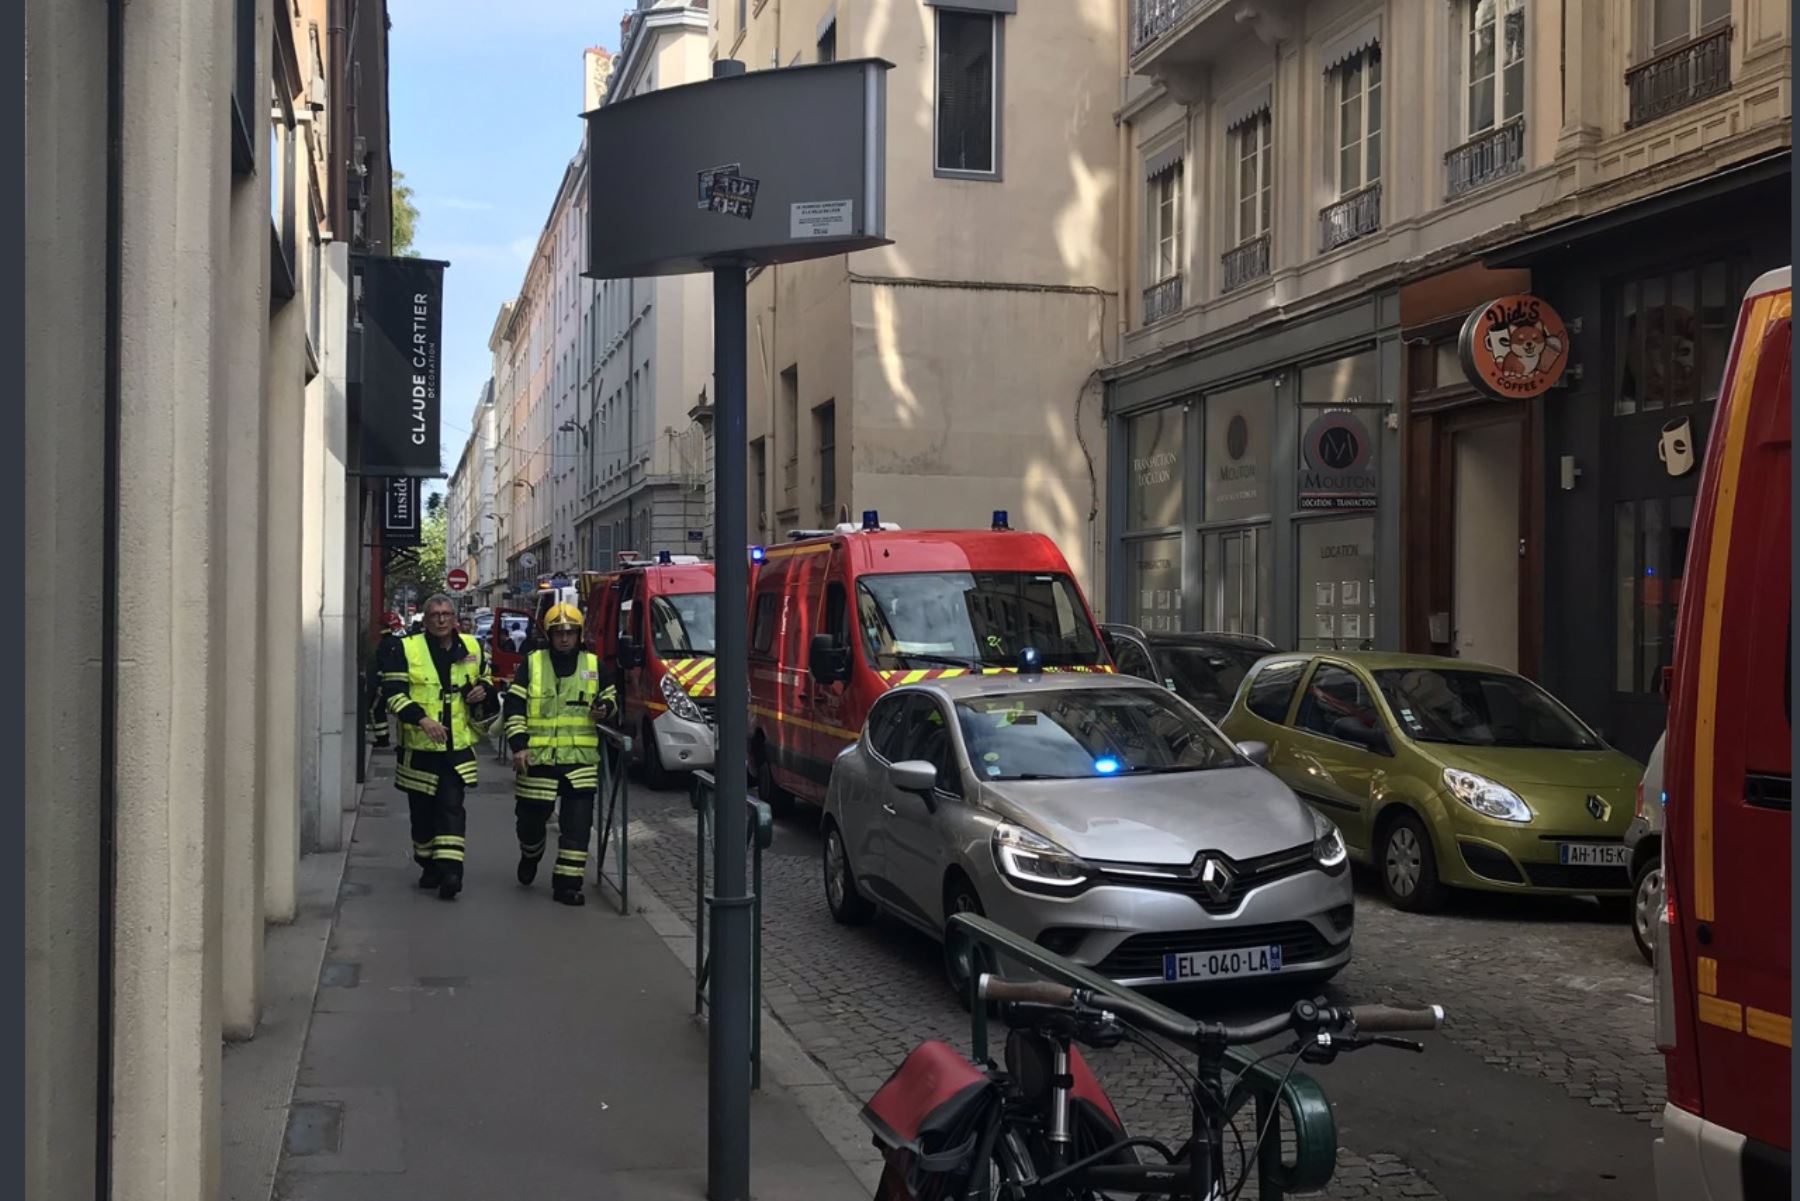 Una explosión ha causado al menos ocho
heridos leves junto a una panadería en el centro de Lyon, Francia. Foto: Twitter/@prefetrhone